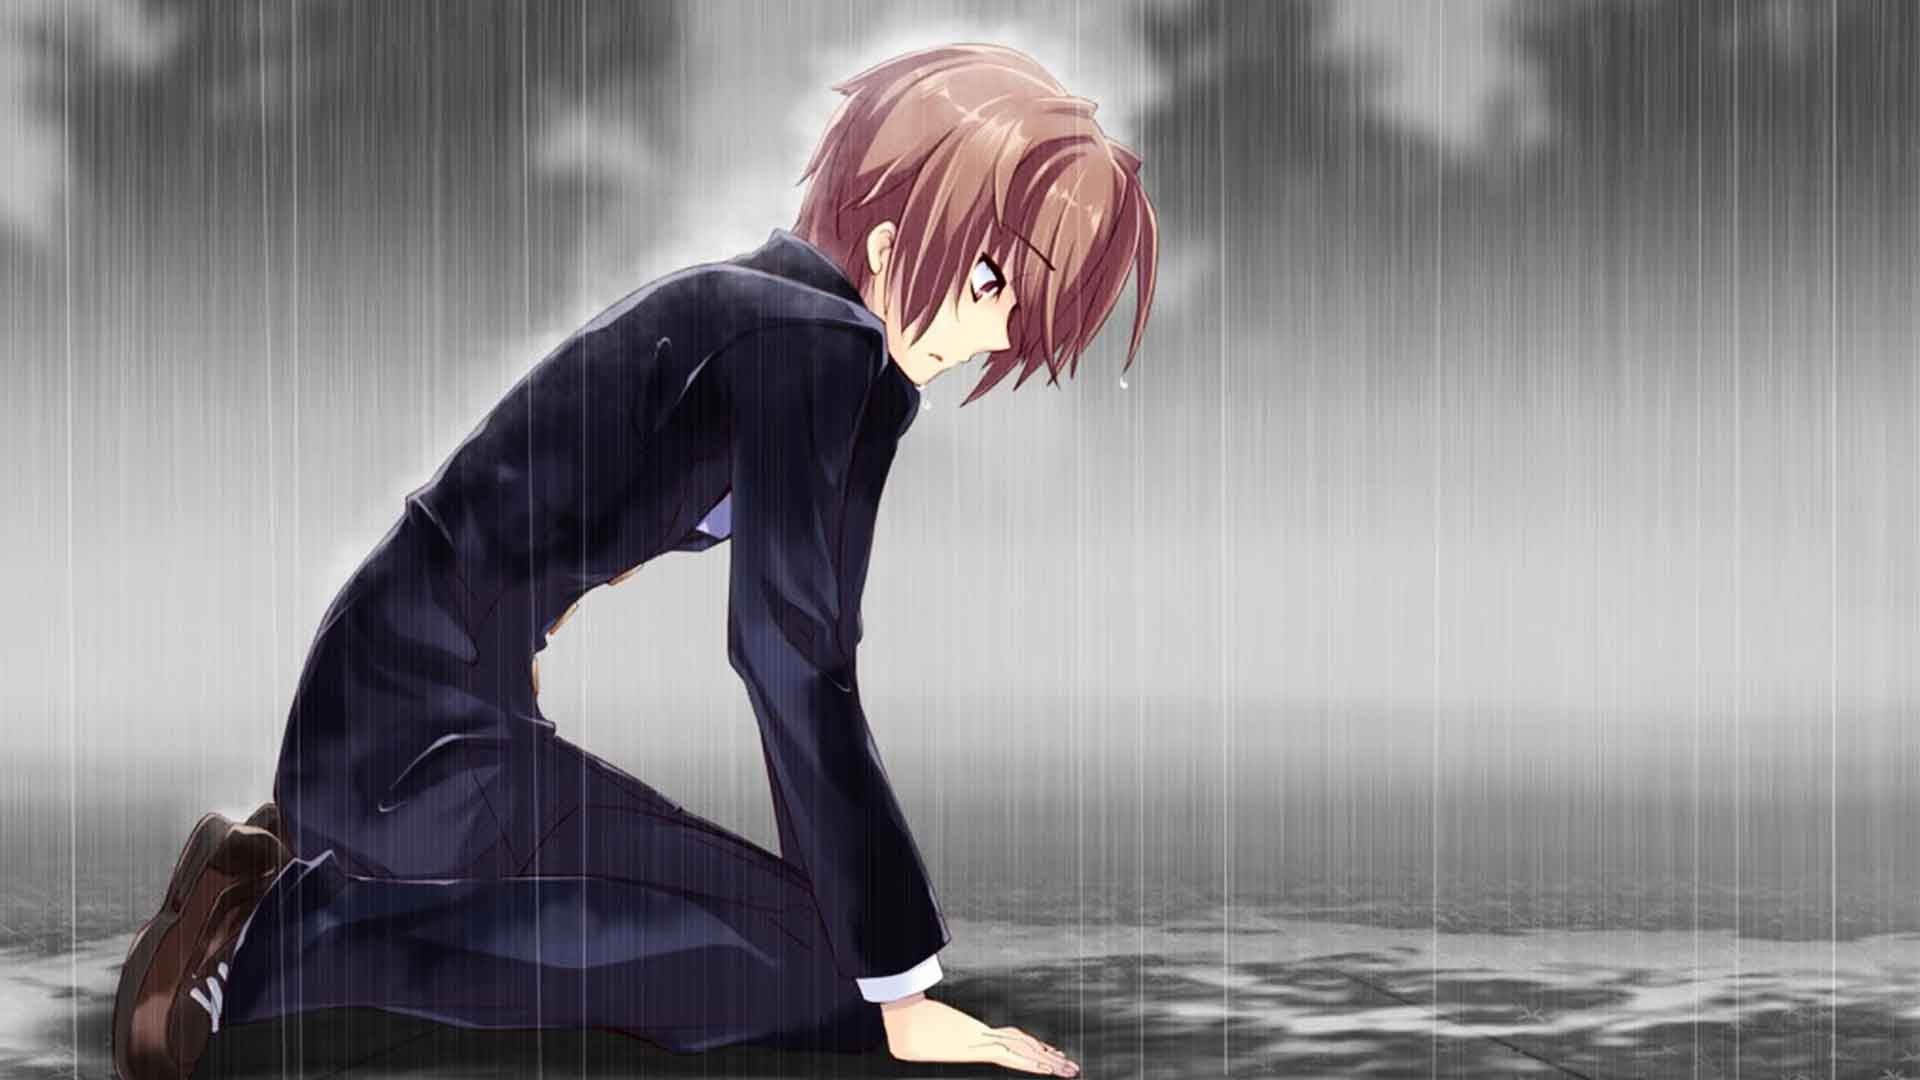 Sad Anime Wallpaper HD For Boys